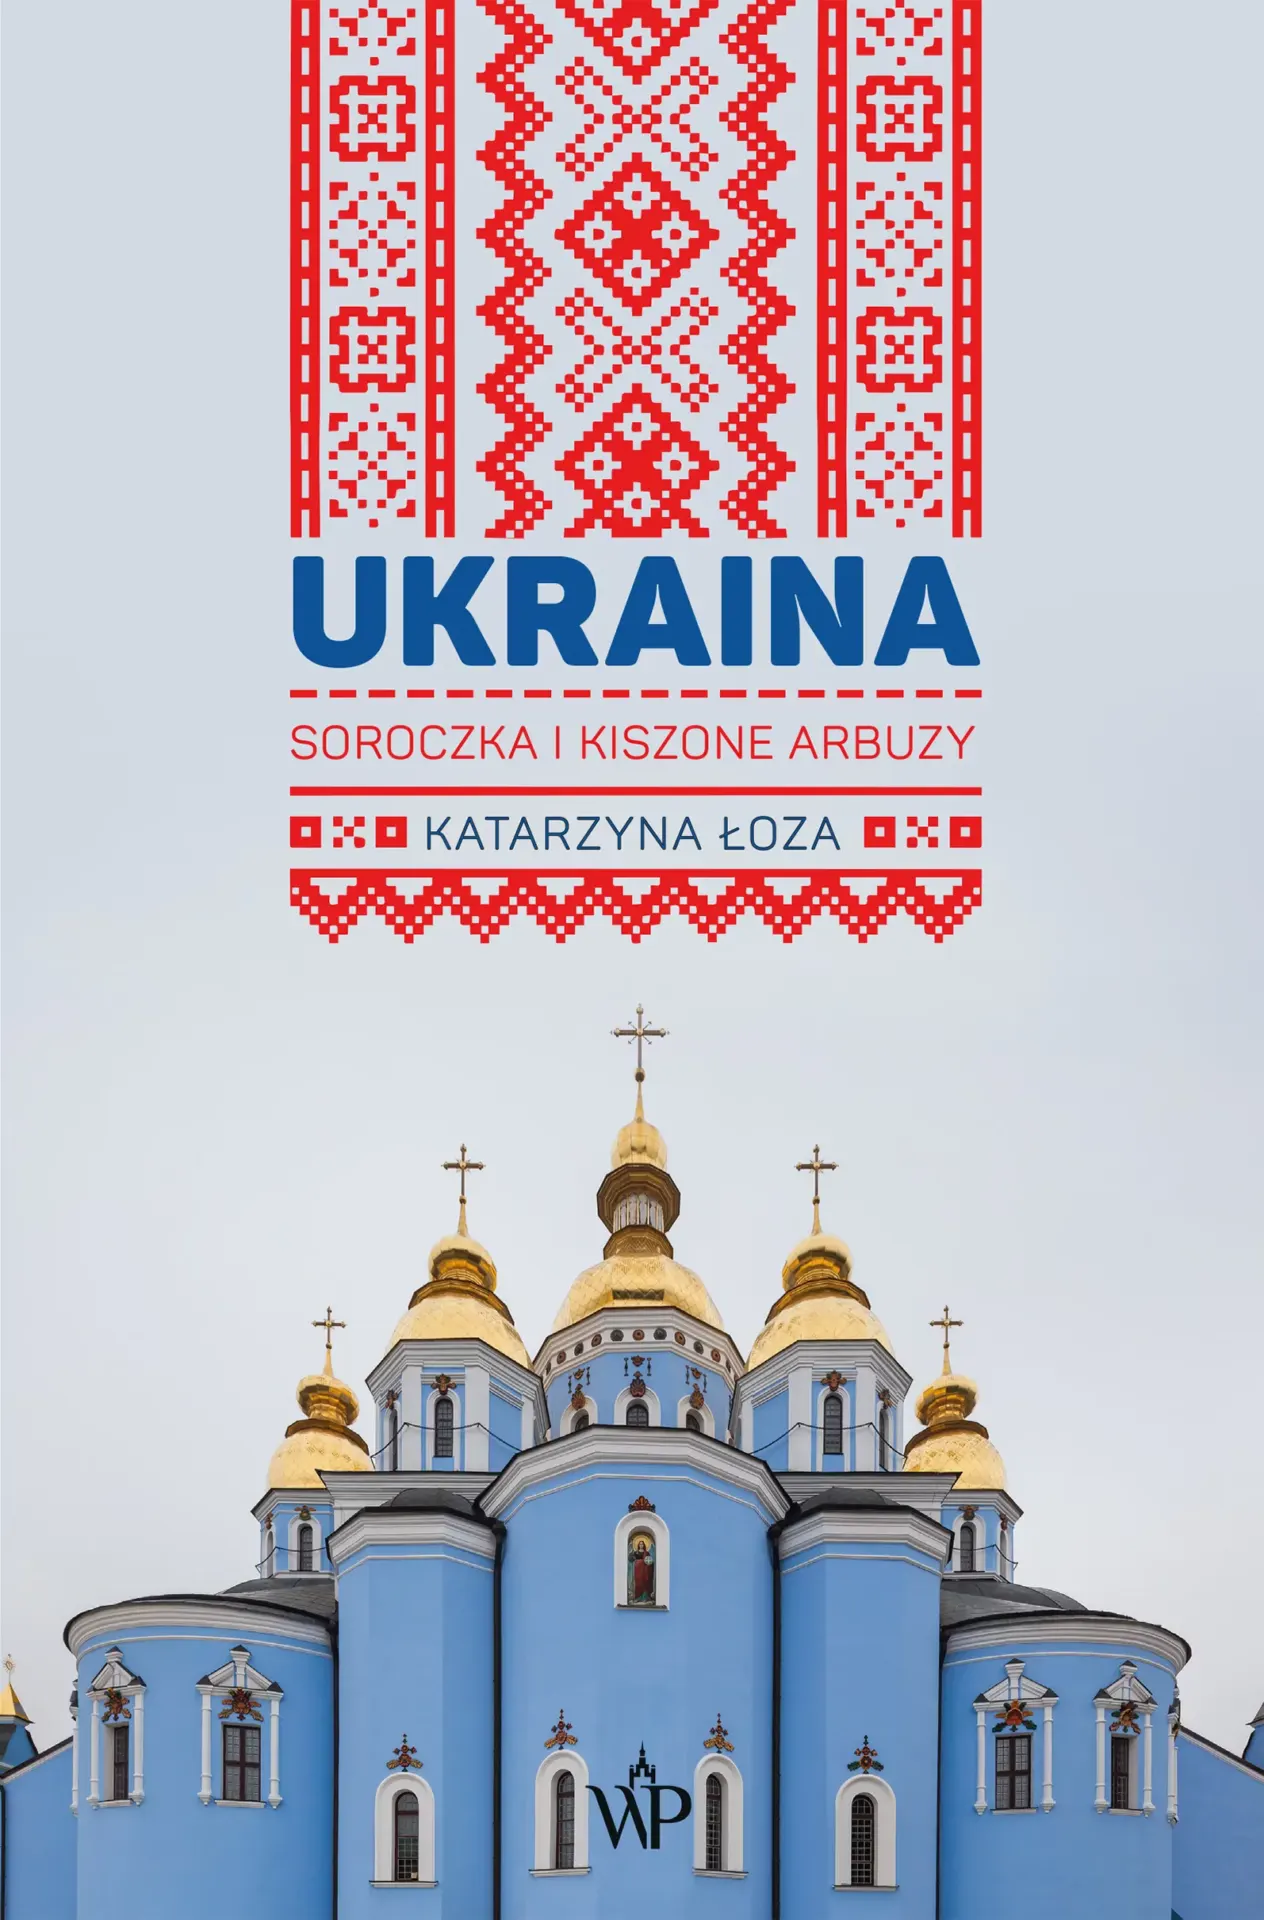 Від історичних роздумів про Євромайдан до ілюстрацій з муралами: 5 польських репортажів про Україну  Ukraina Dpi UAinKrakow.pl